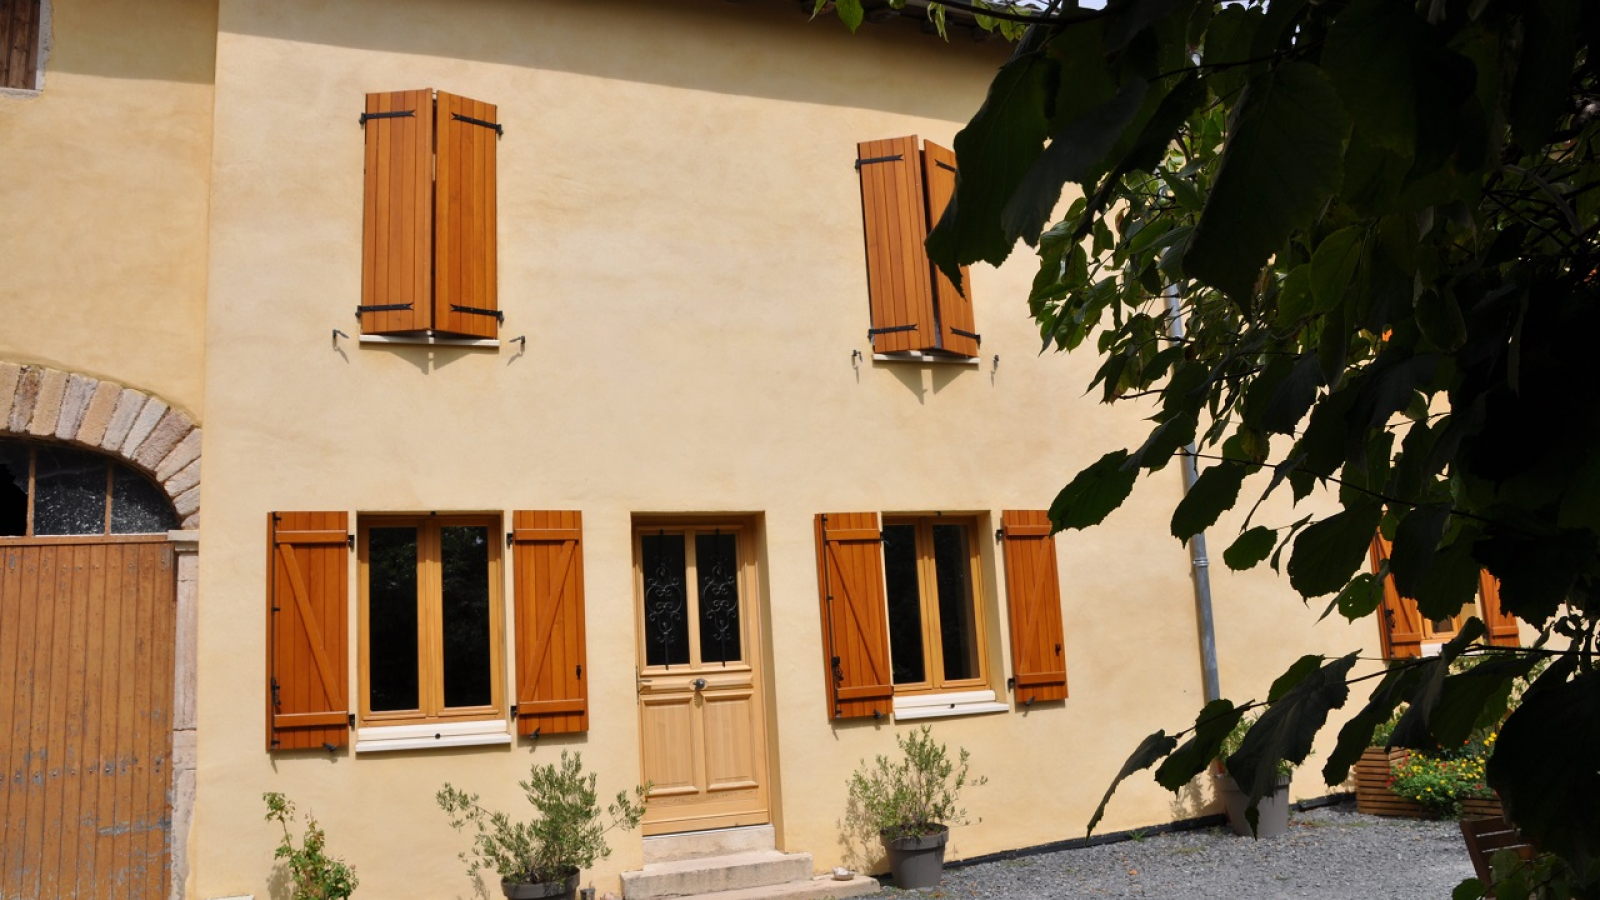 Chambres d'Hôtes 'Domaine aux 4 Temps' à Villié-Morgon (Rhône-Beaujolais) : la maison.